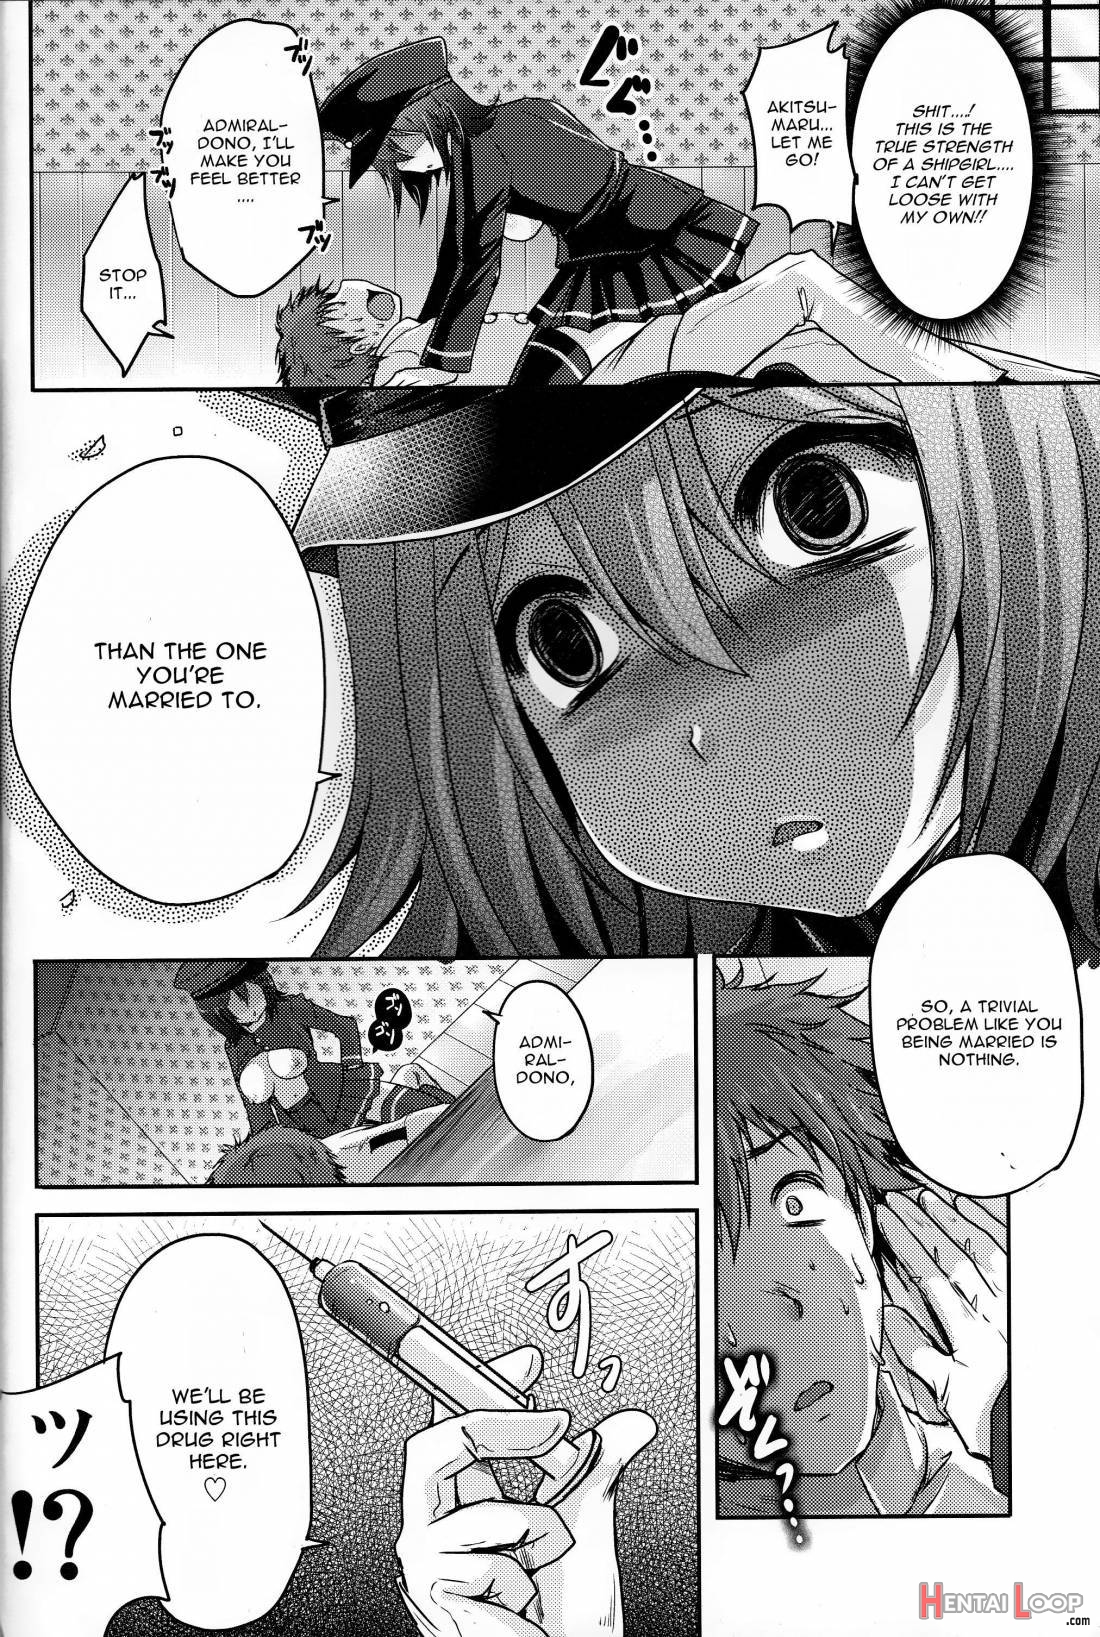 Kinzoku No Wa page 7